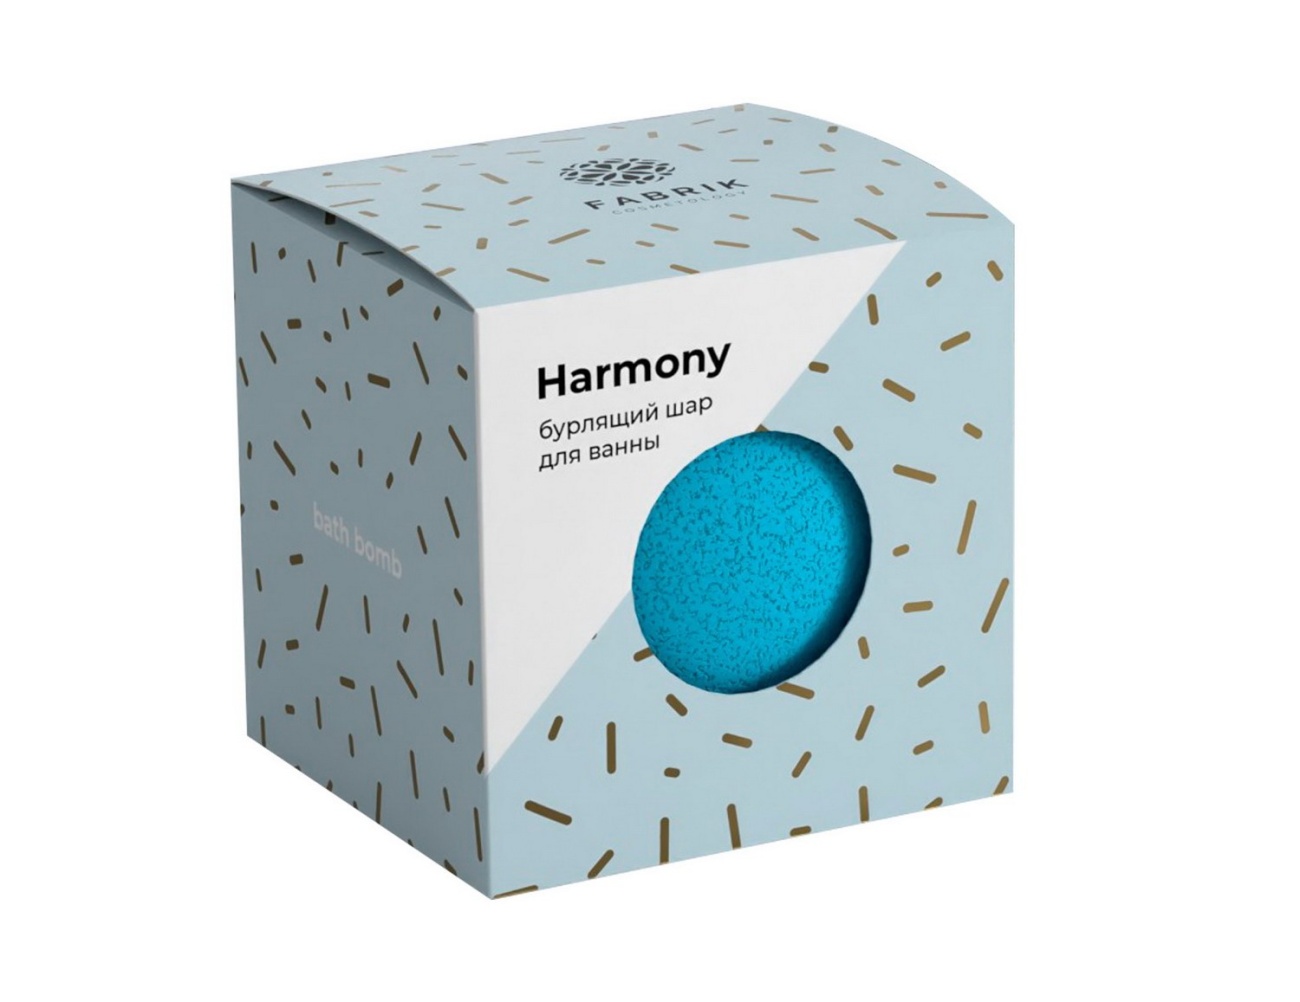 Шар бурлящий Fabrik Cosmetology Harmony для ванны 120 г шар бурлящий для ванны l cosmetics вишня 160 г